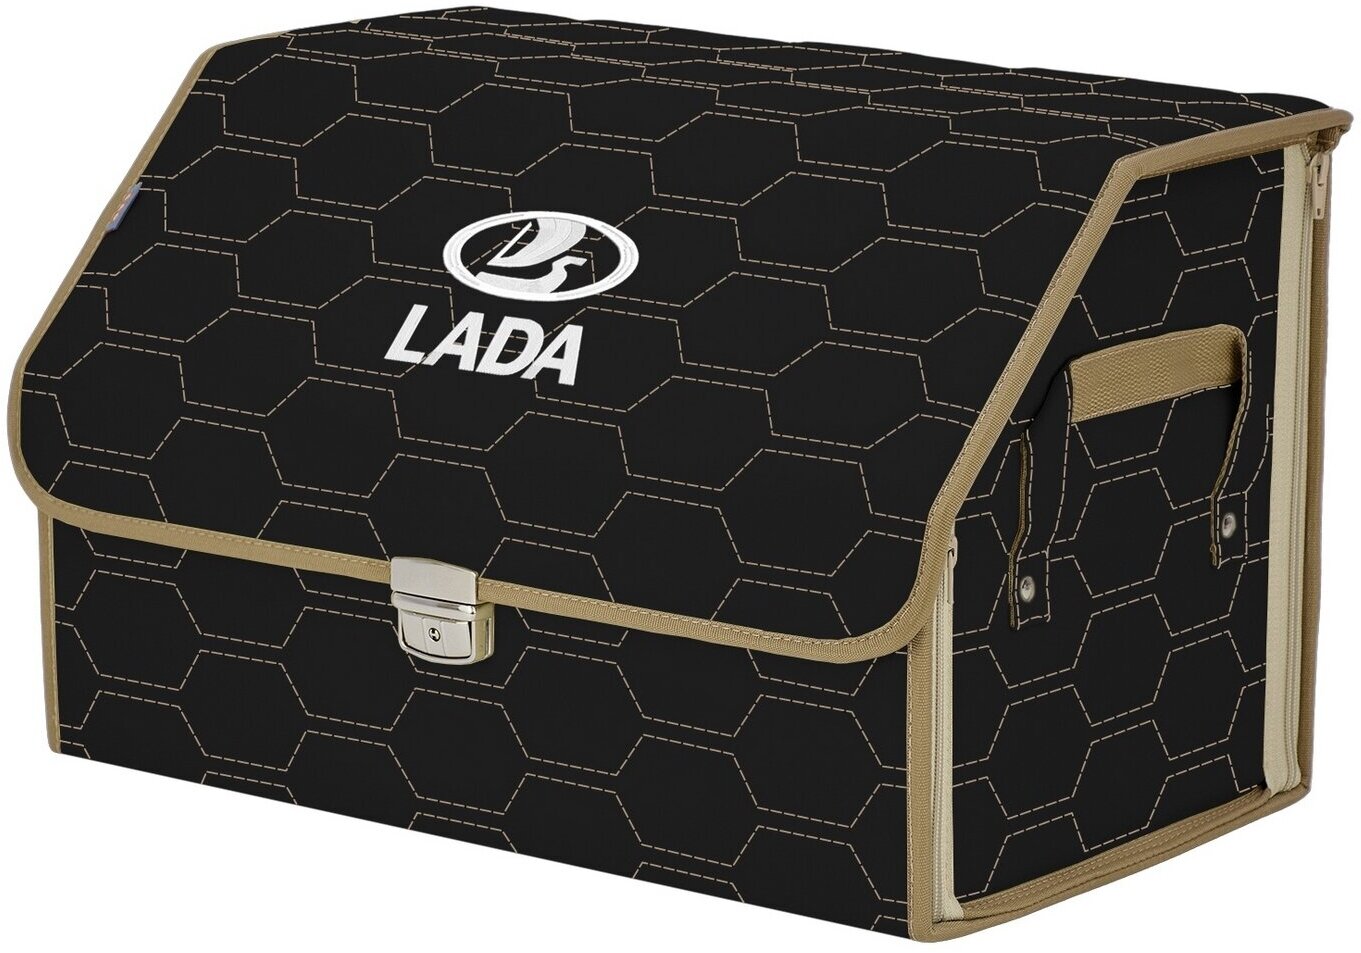 Органайзер-саквояж в багажник "Союз Премиум" (размер L). Цвет: черный с бежевой прострочкой Соты и вышивкой LADA (лада).